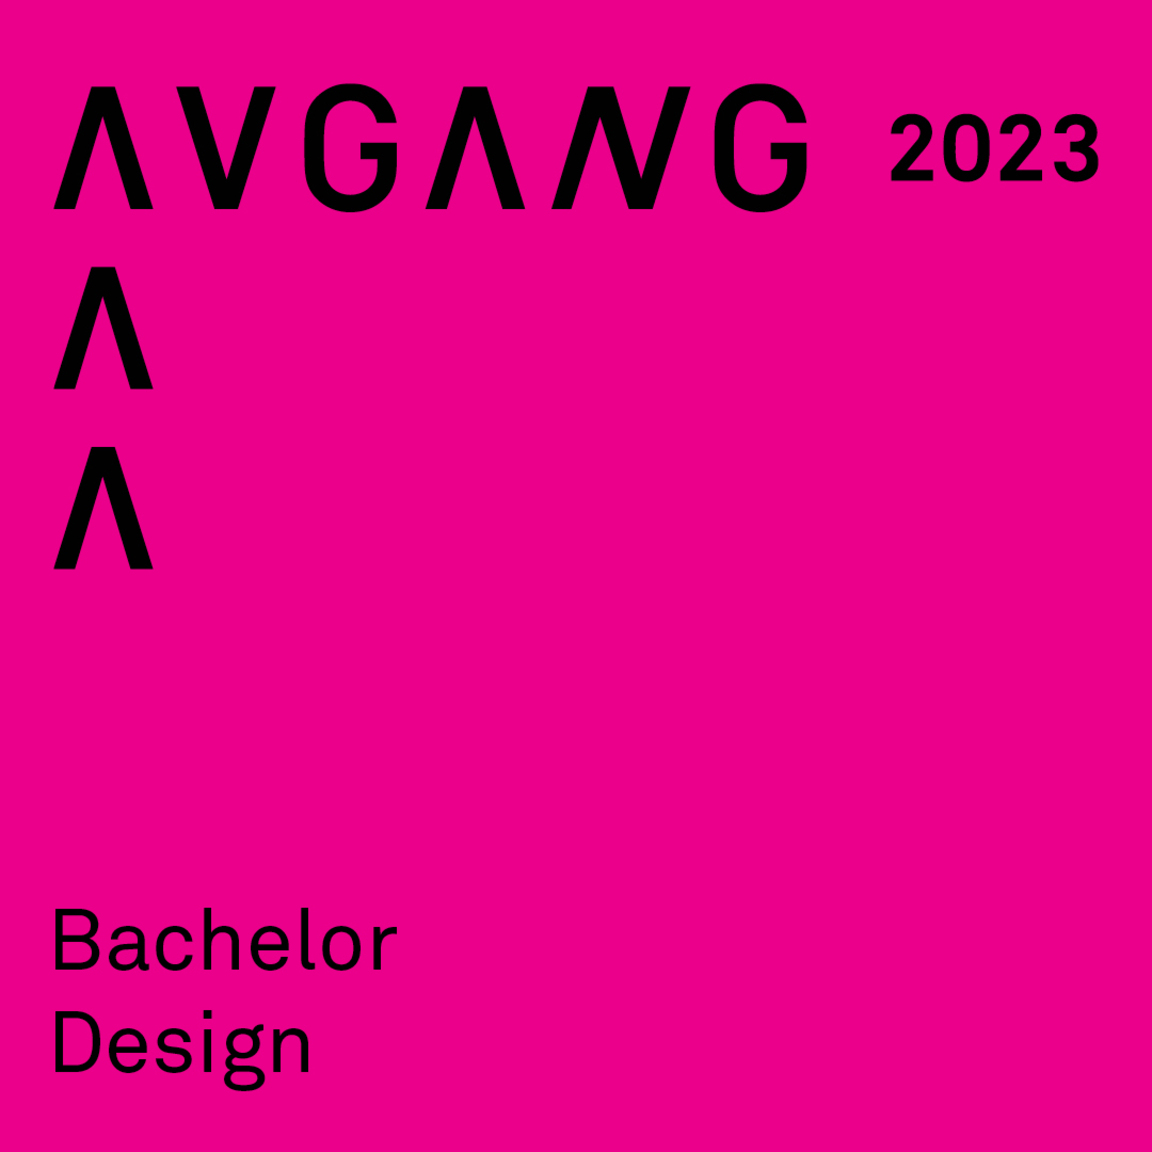 Avgang 2023: Bachelor design